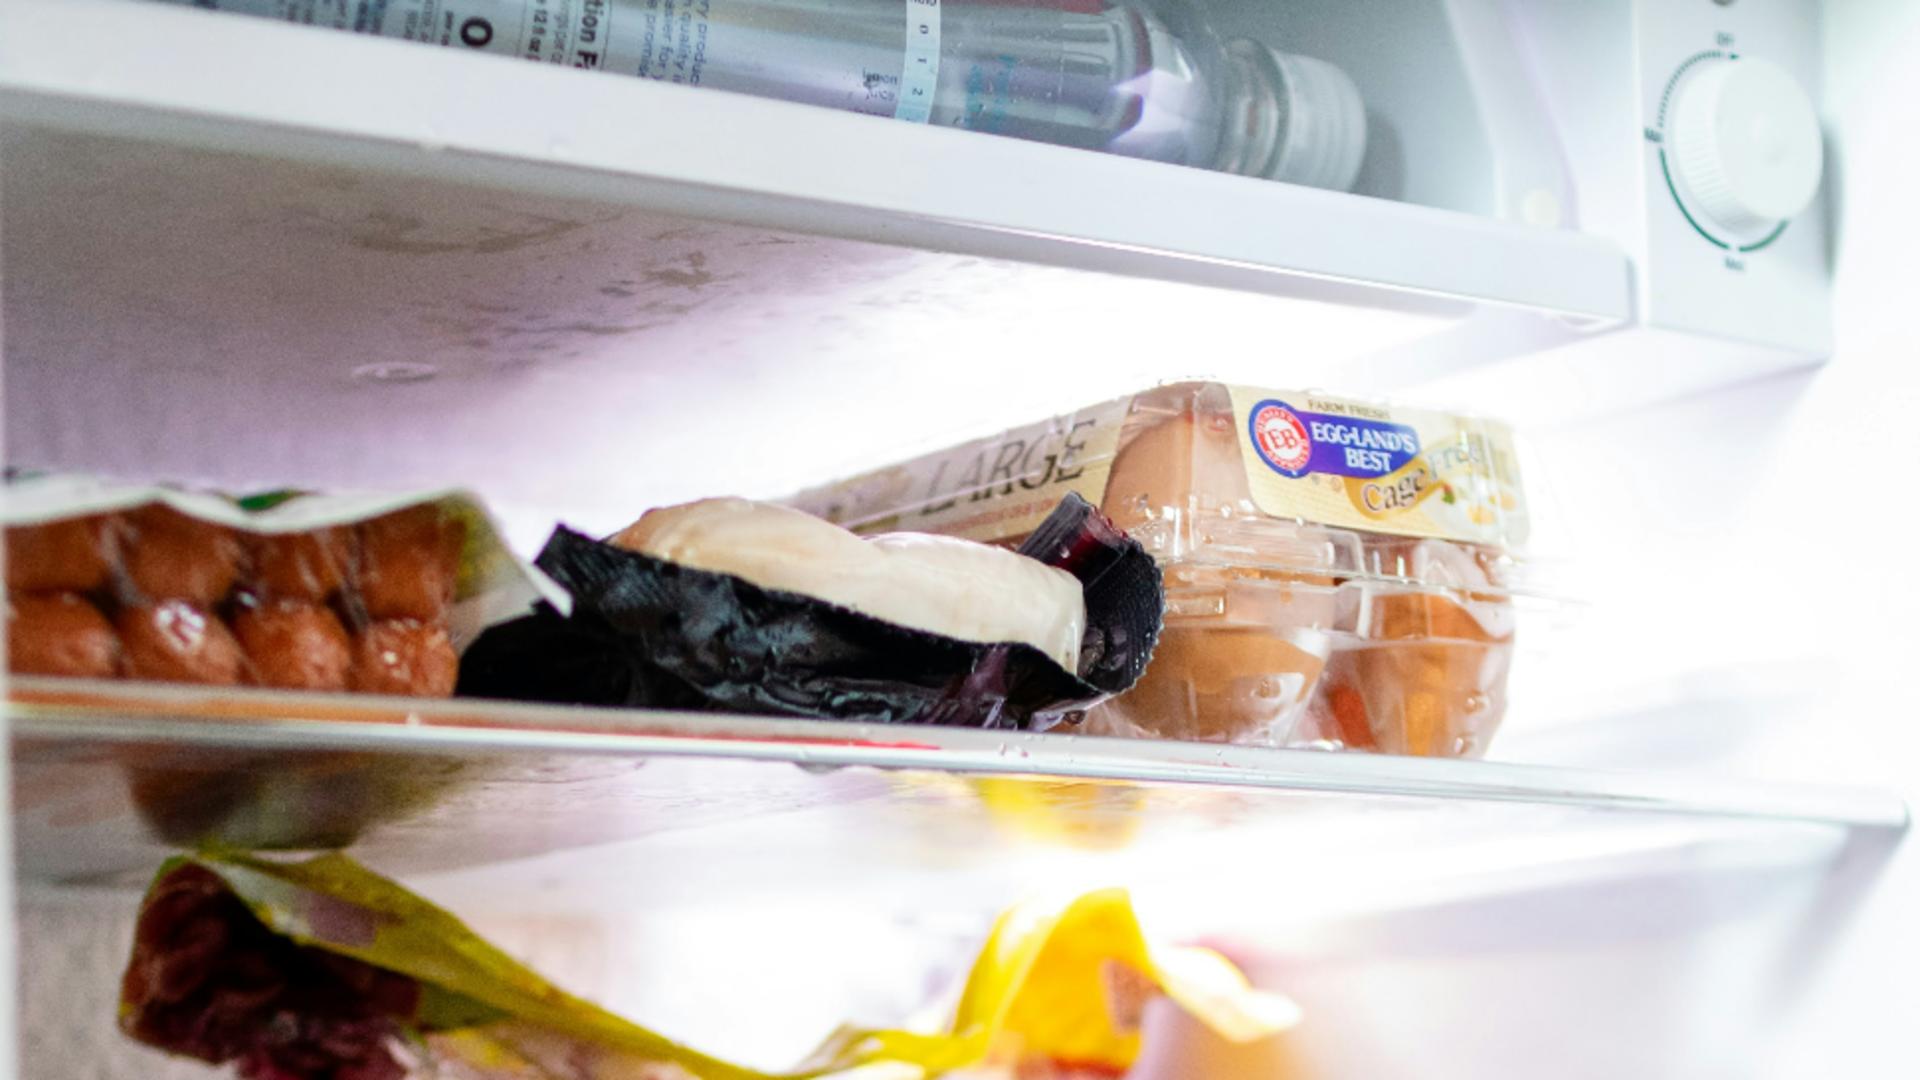 Temperatura în frigider, pe timpul verii. La cât trebuie să ții rotița: sfaturi practice pentru a preveni stricarea mâncării și deteriorarea aparatului